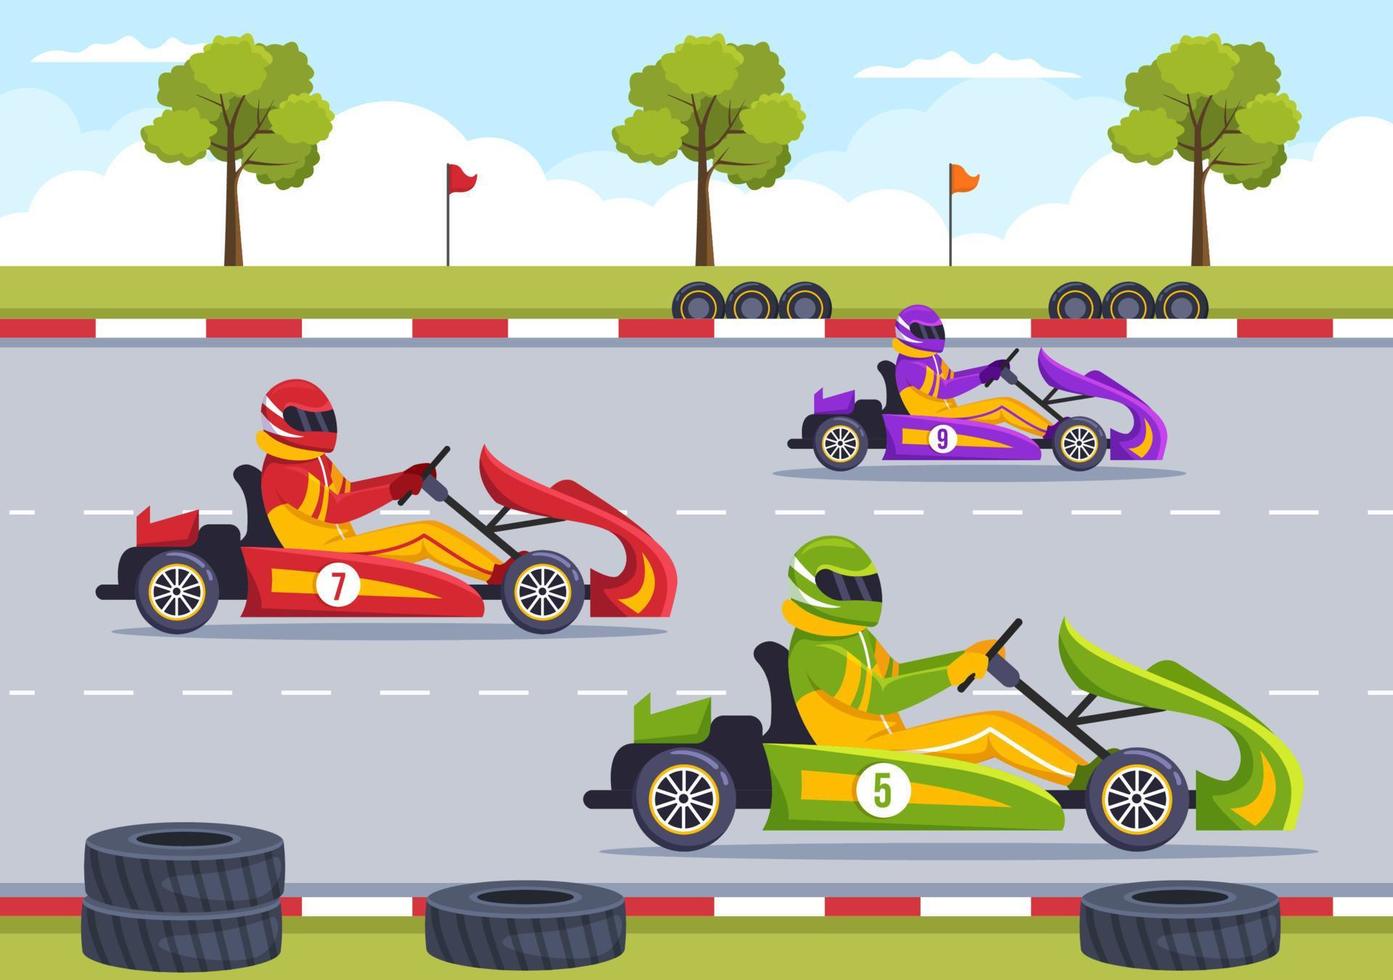 esporte de kart com jogo de corrida go kart ou mini carro em pequena pista de circuito em ilustração de modelo desenhado à mão de desenho animado plano vetor